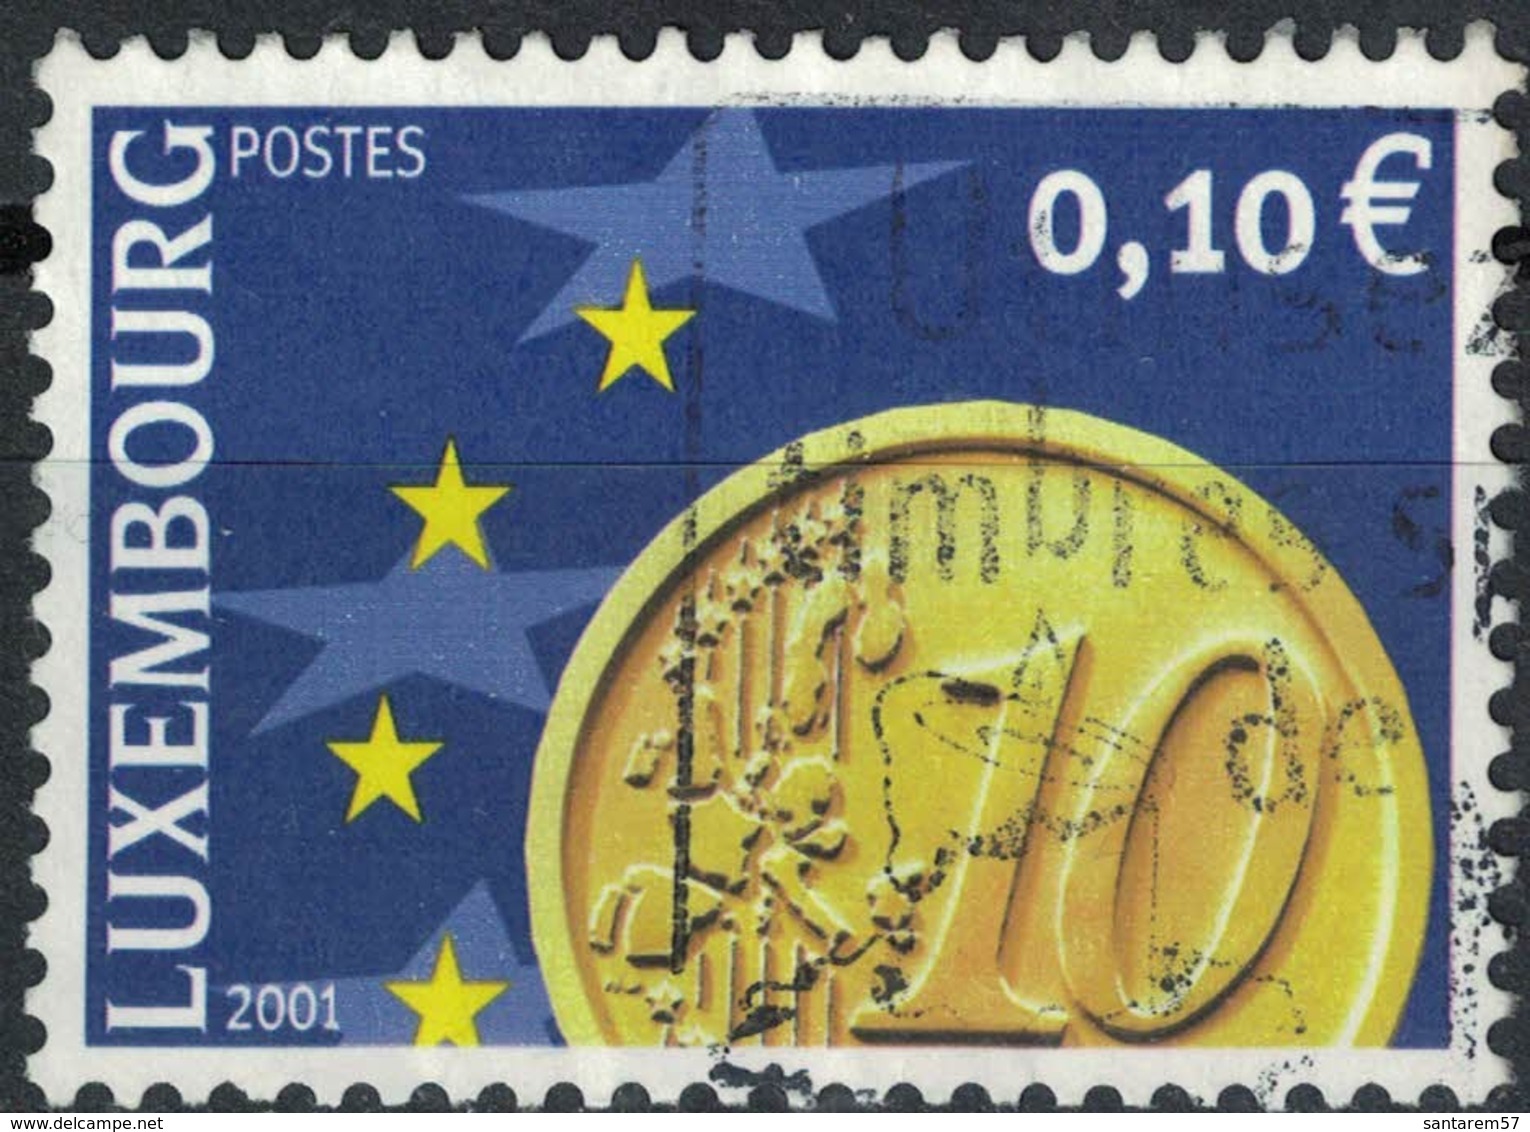 Luxembourg 2001 Oblitéré Used Représentation D'une Pièce Euro De 10 Centimes - Oblitérés